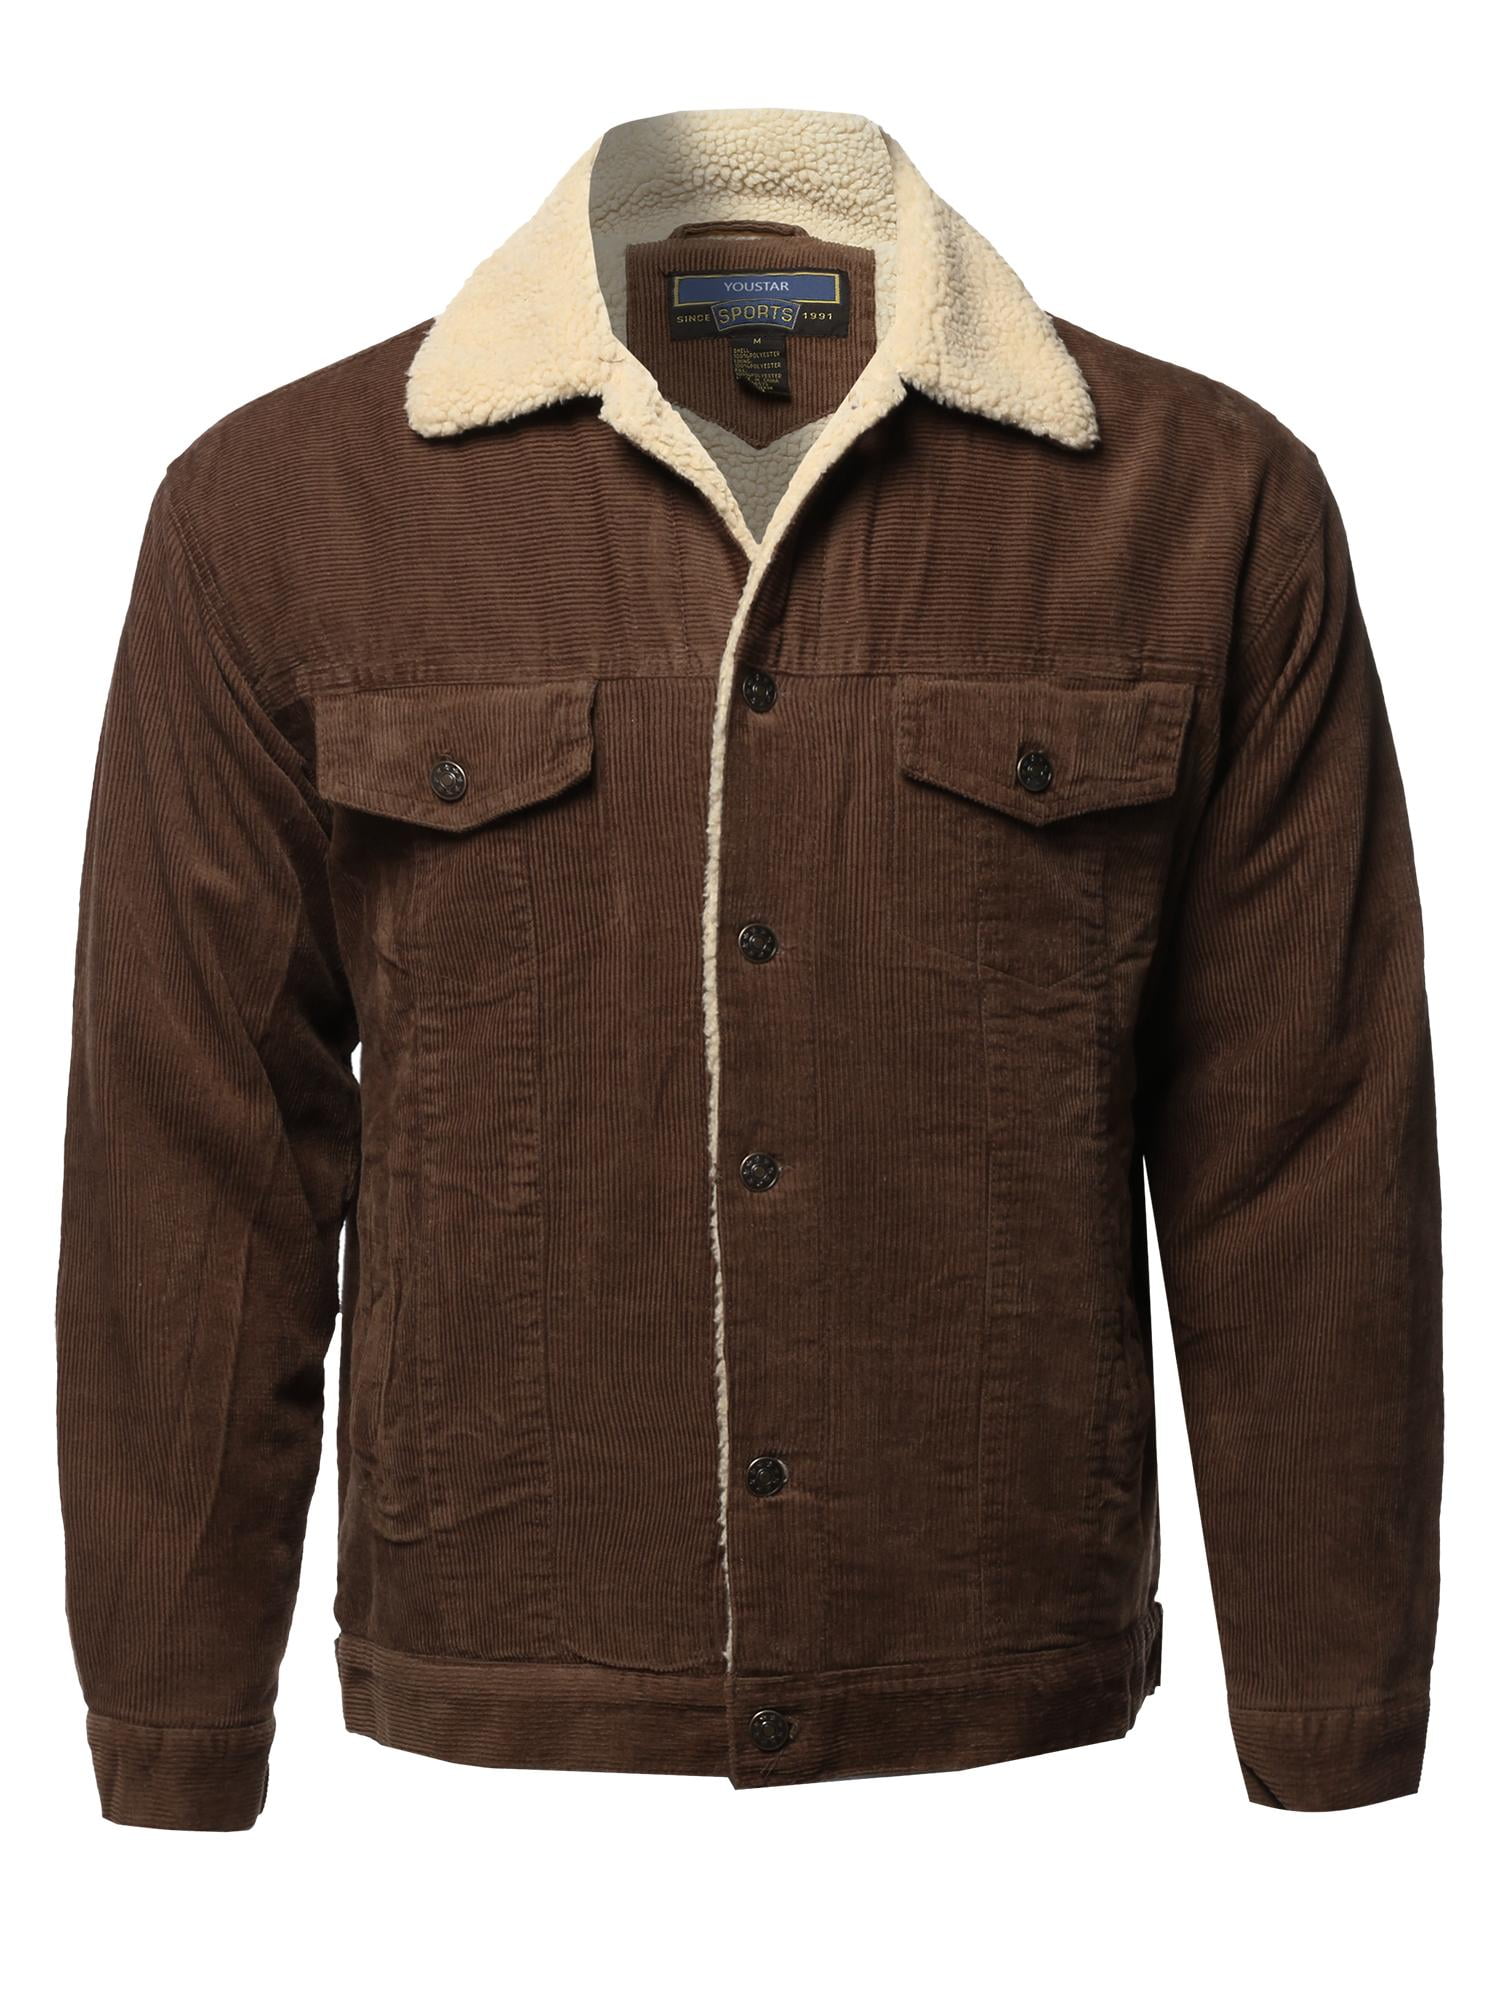 western sherpa lined jacket